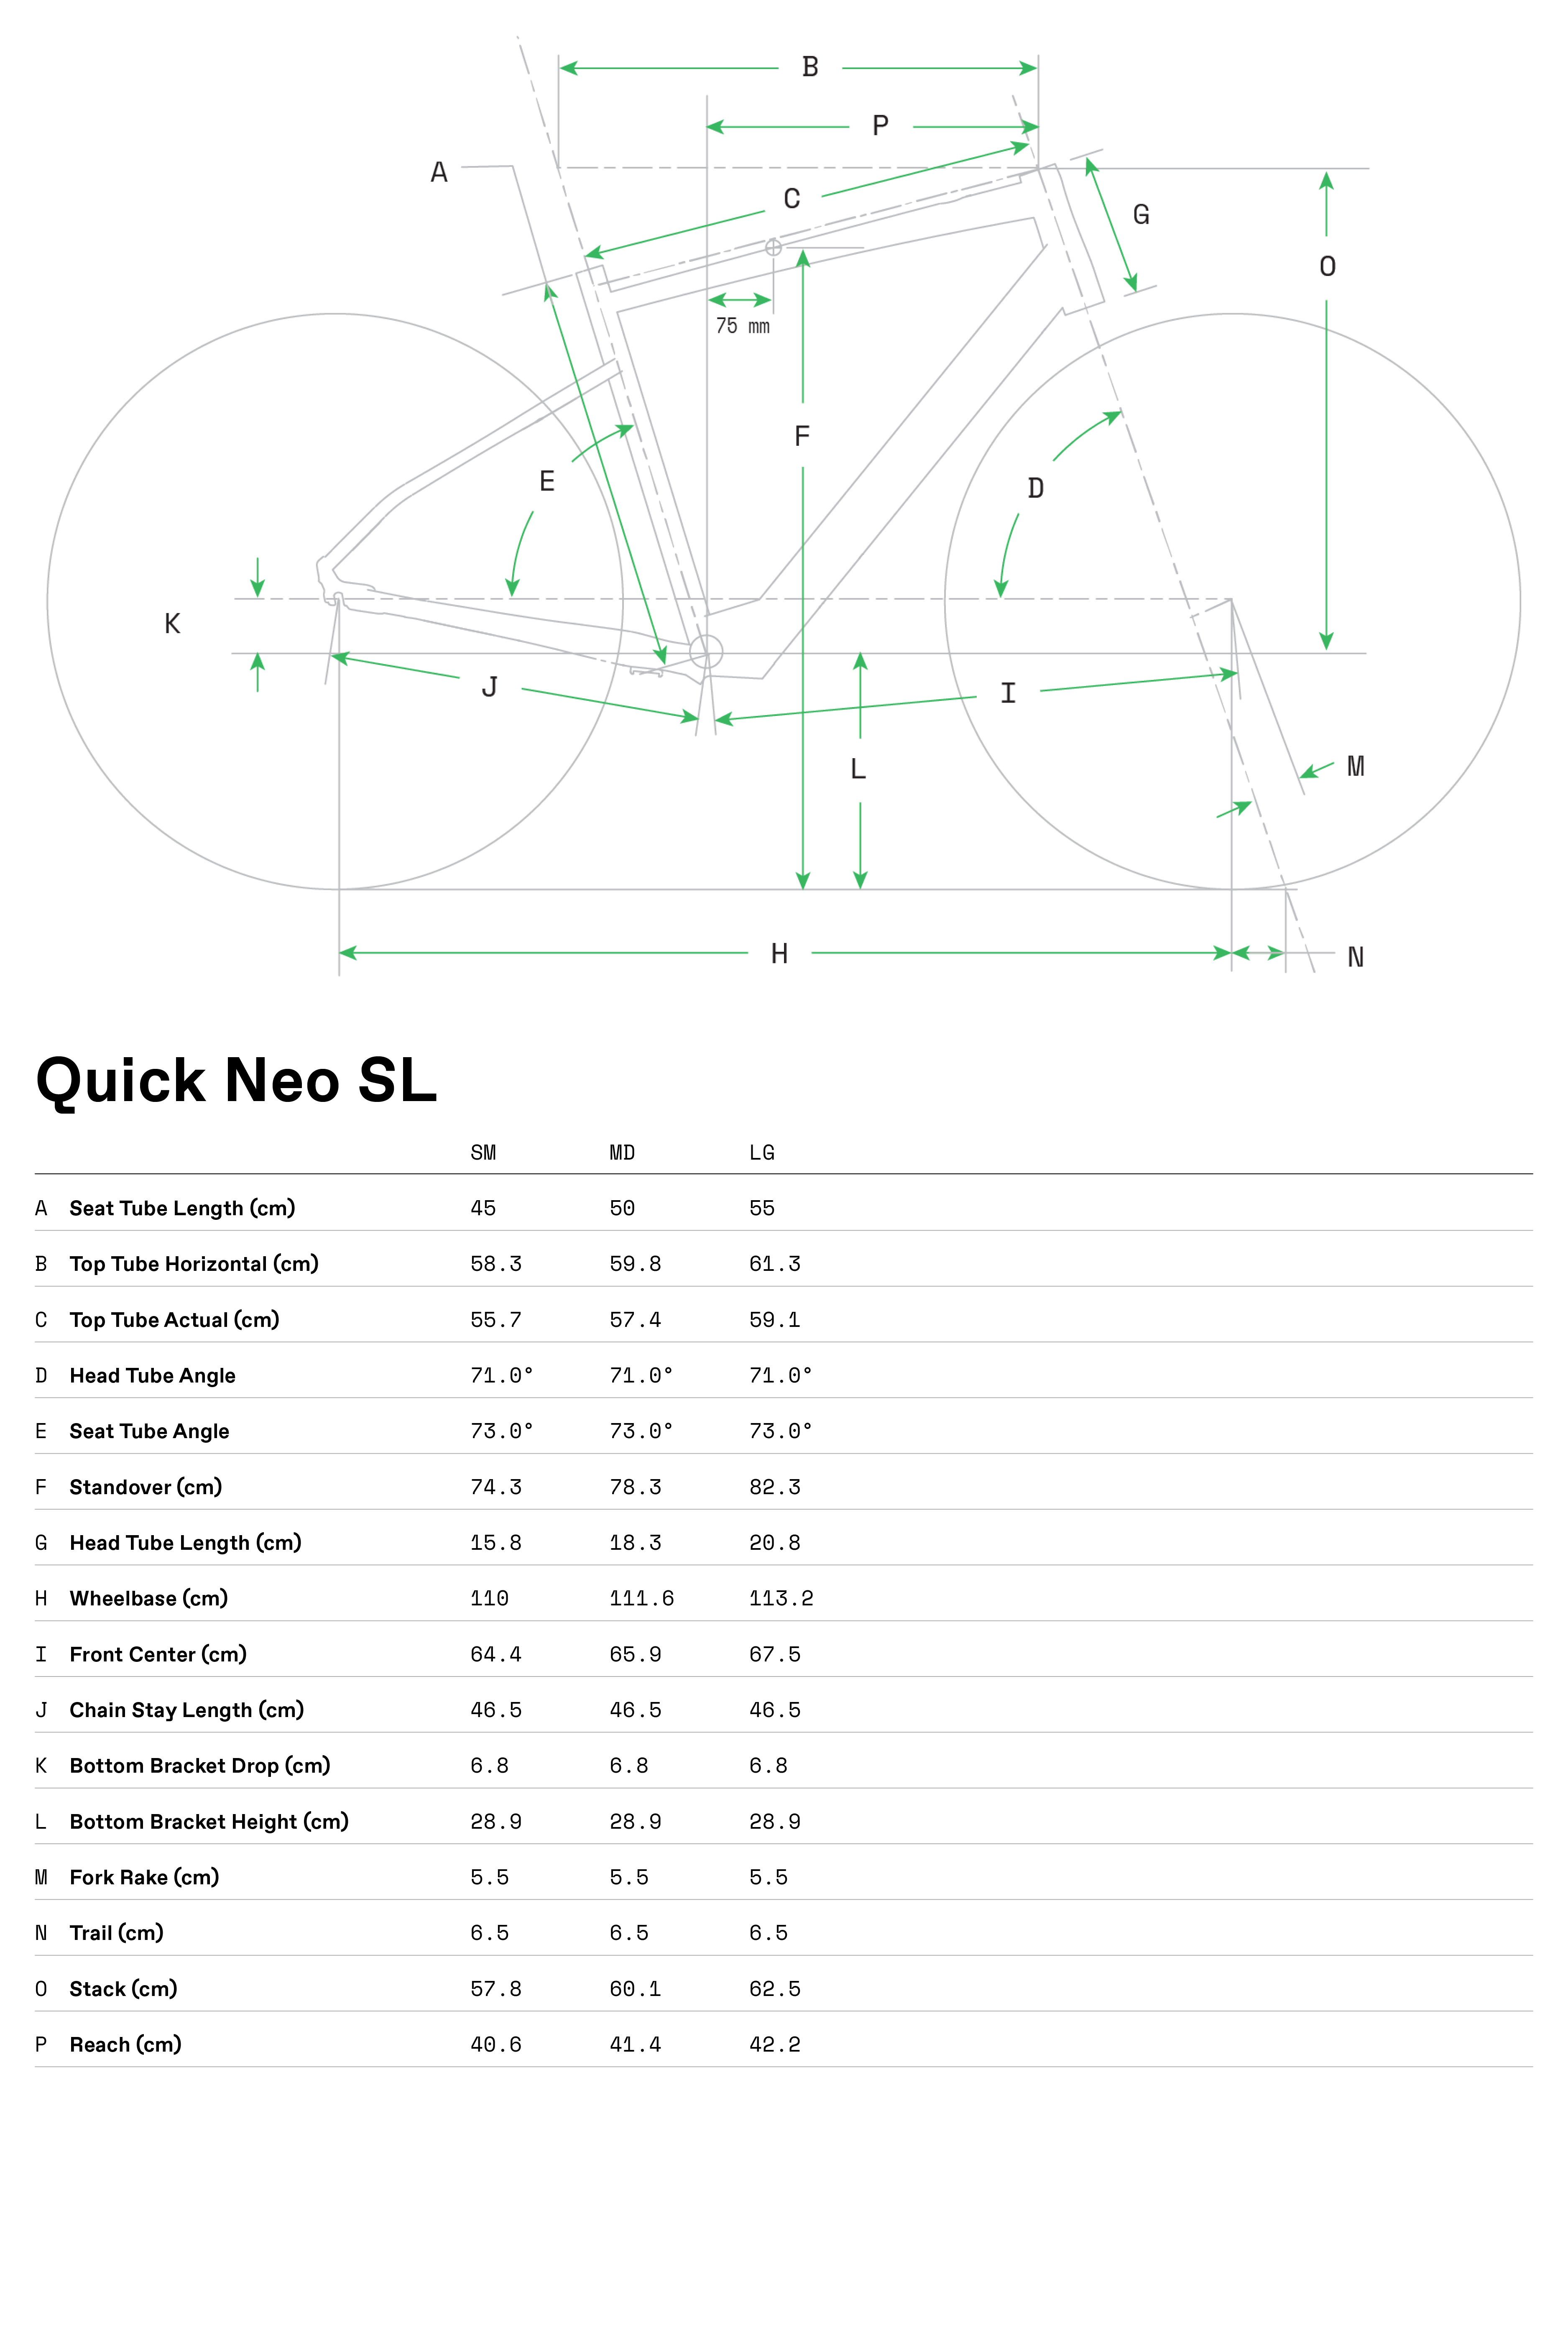 Quick Neo SL Geometry